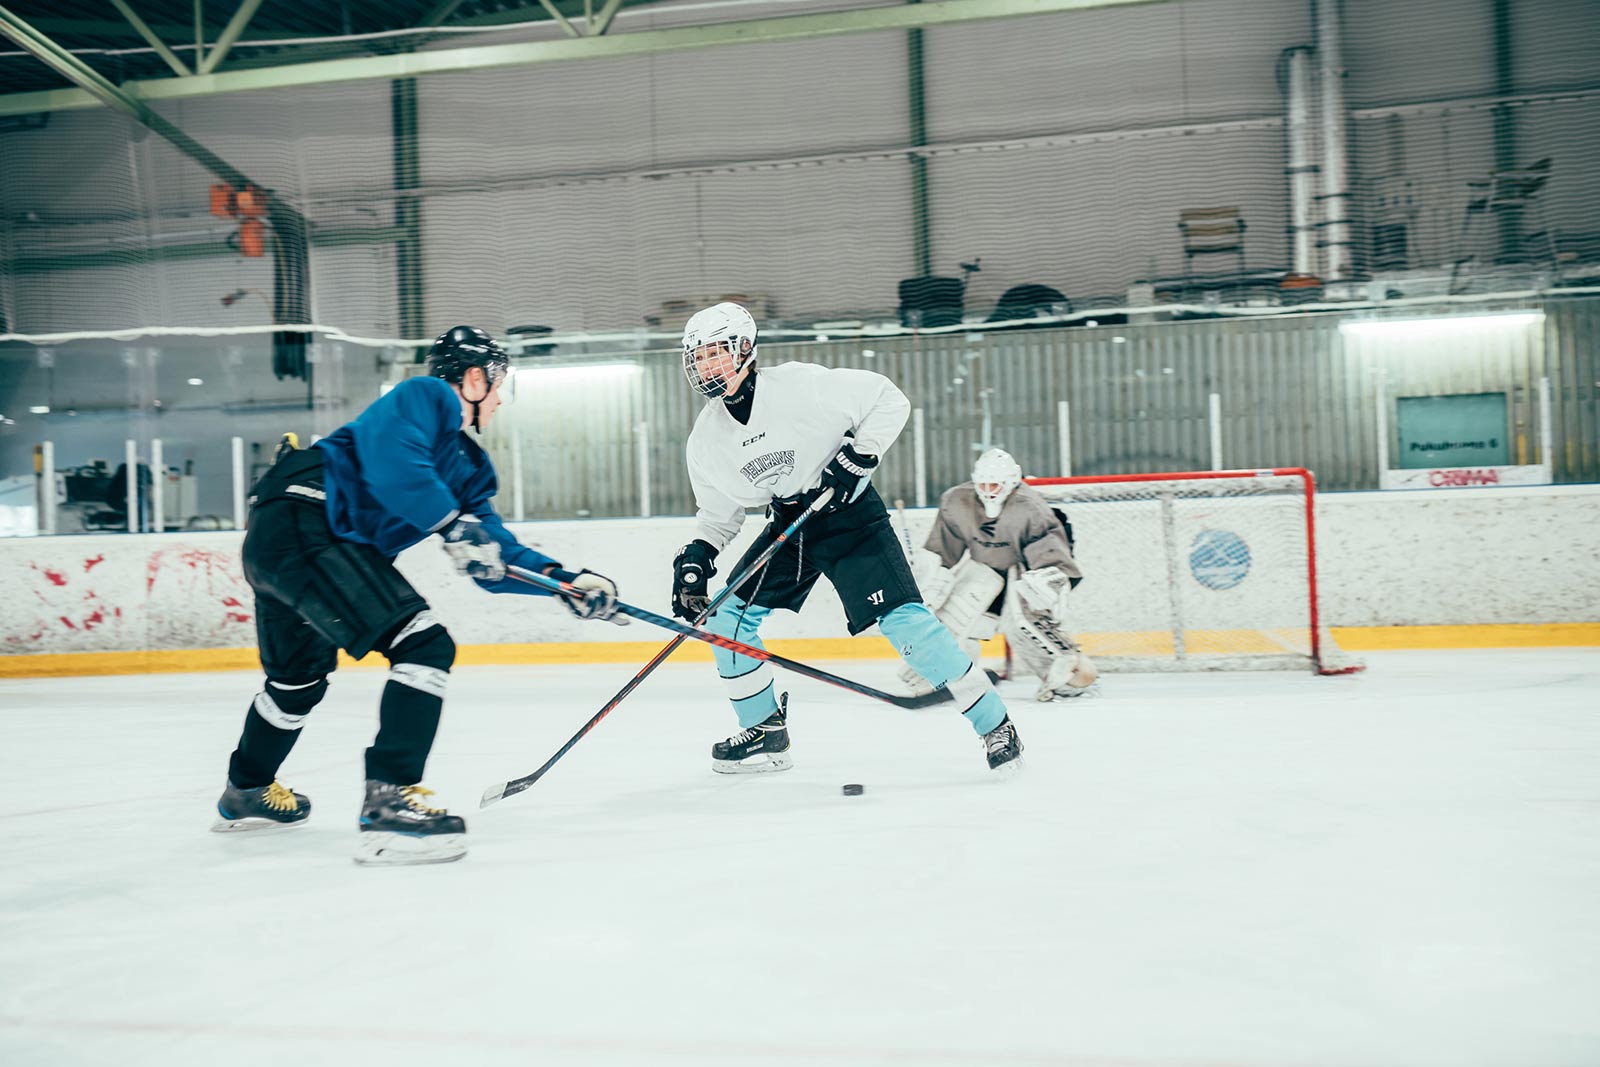 Jääkiekkoilijat pelaavat toisia vastaan pelitilanteessa Pajulahden jäähallissa.